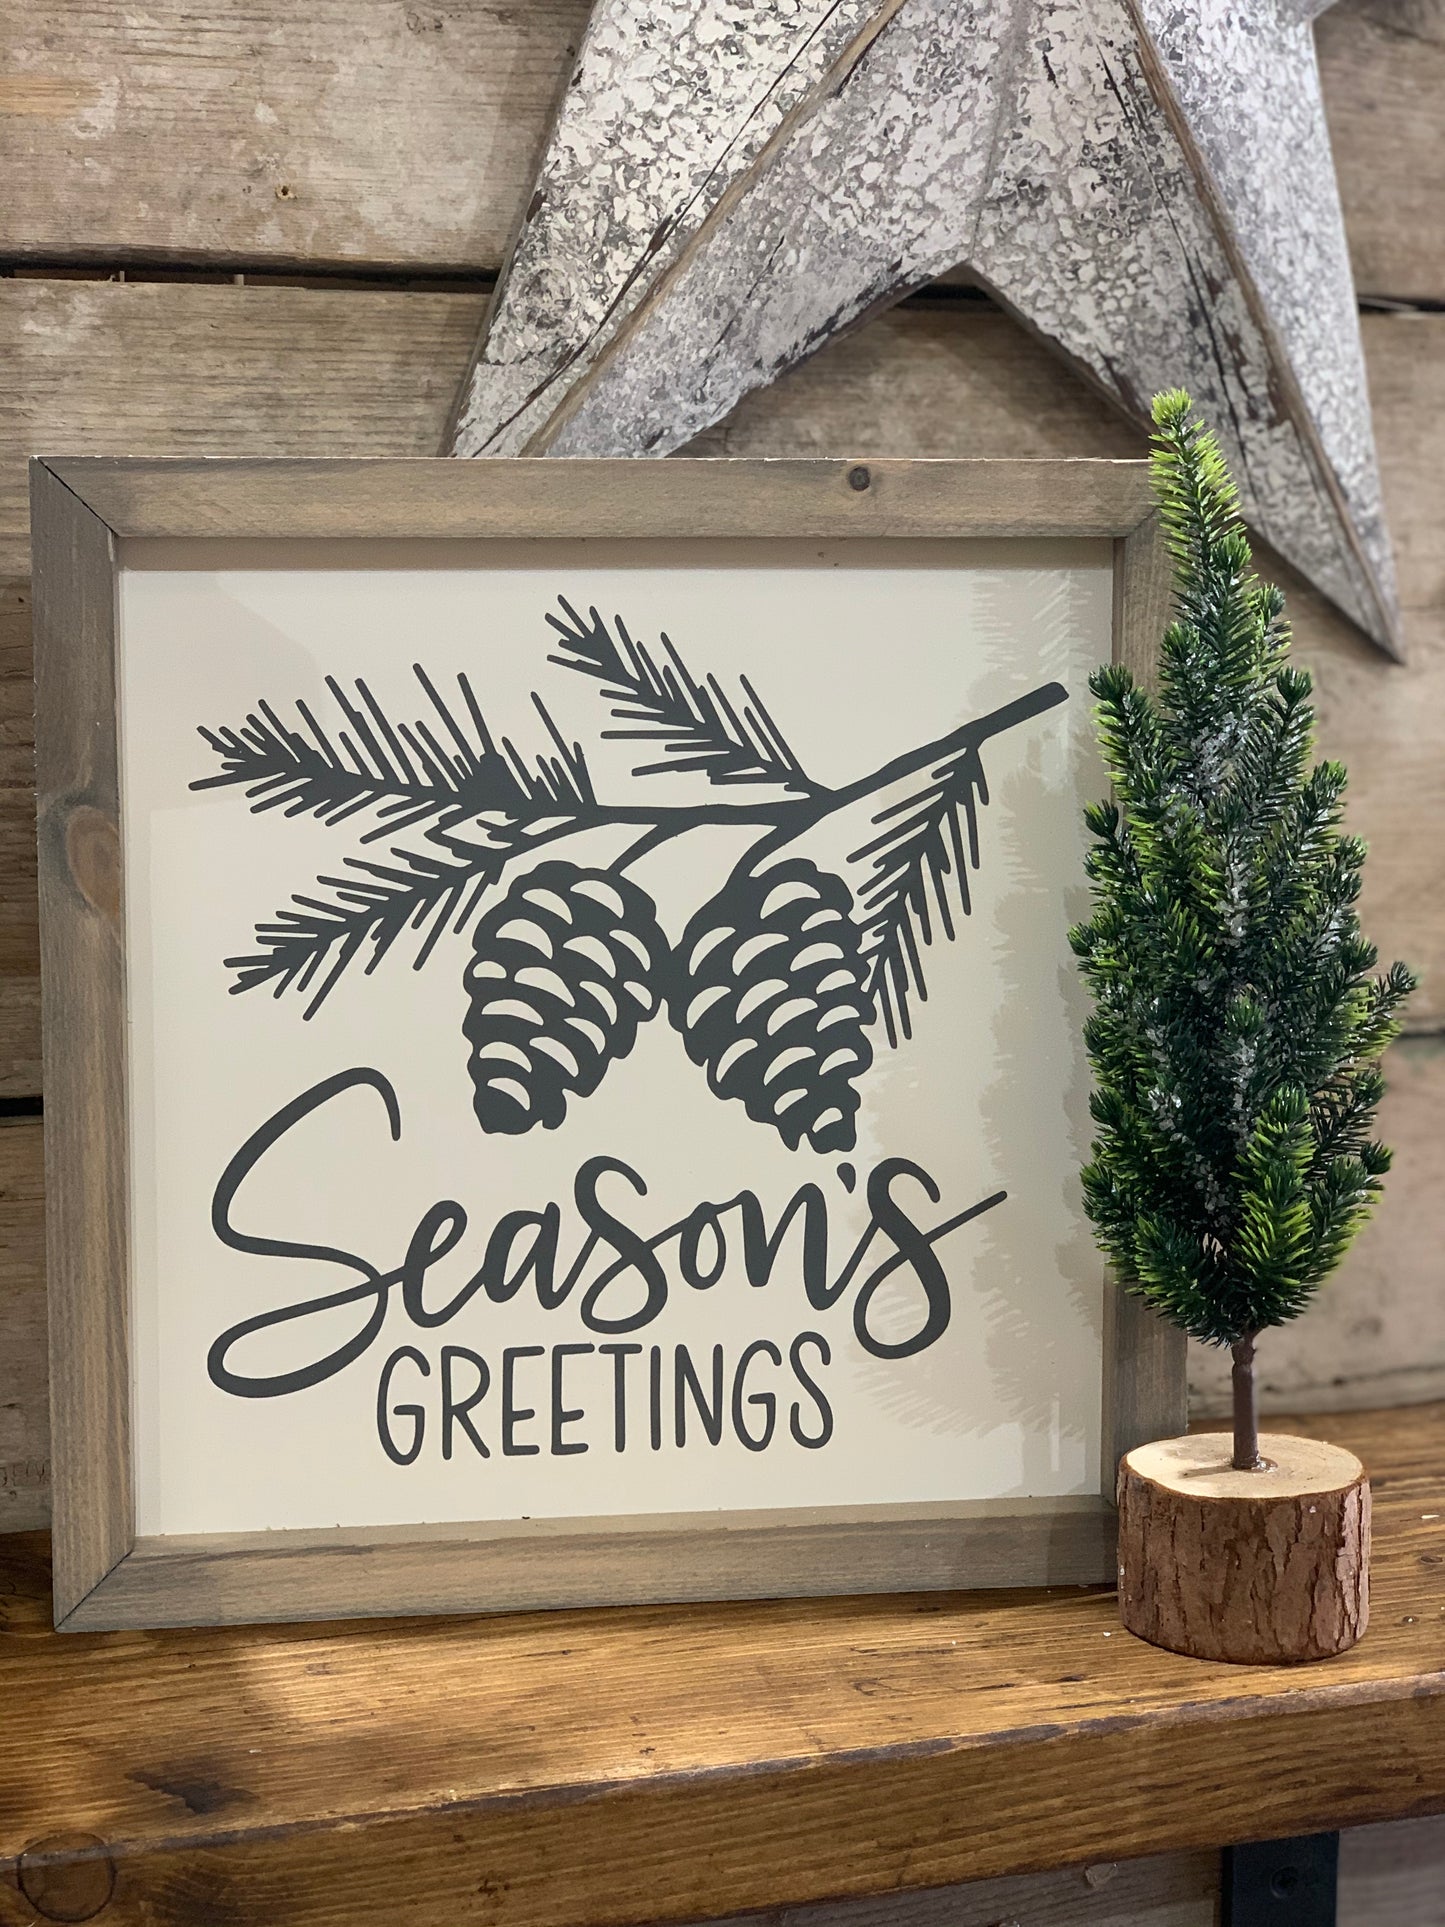 Season's Greetings Framed Sign